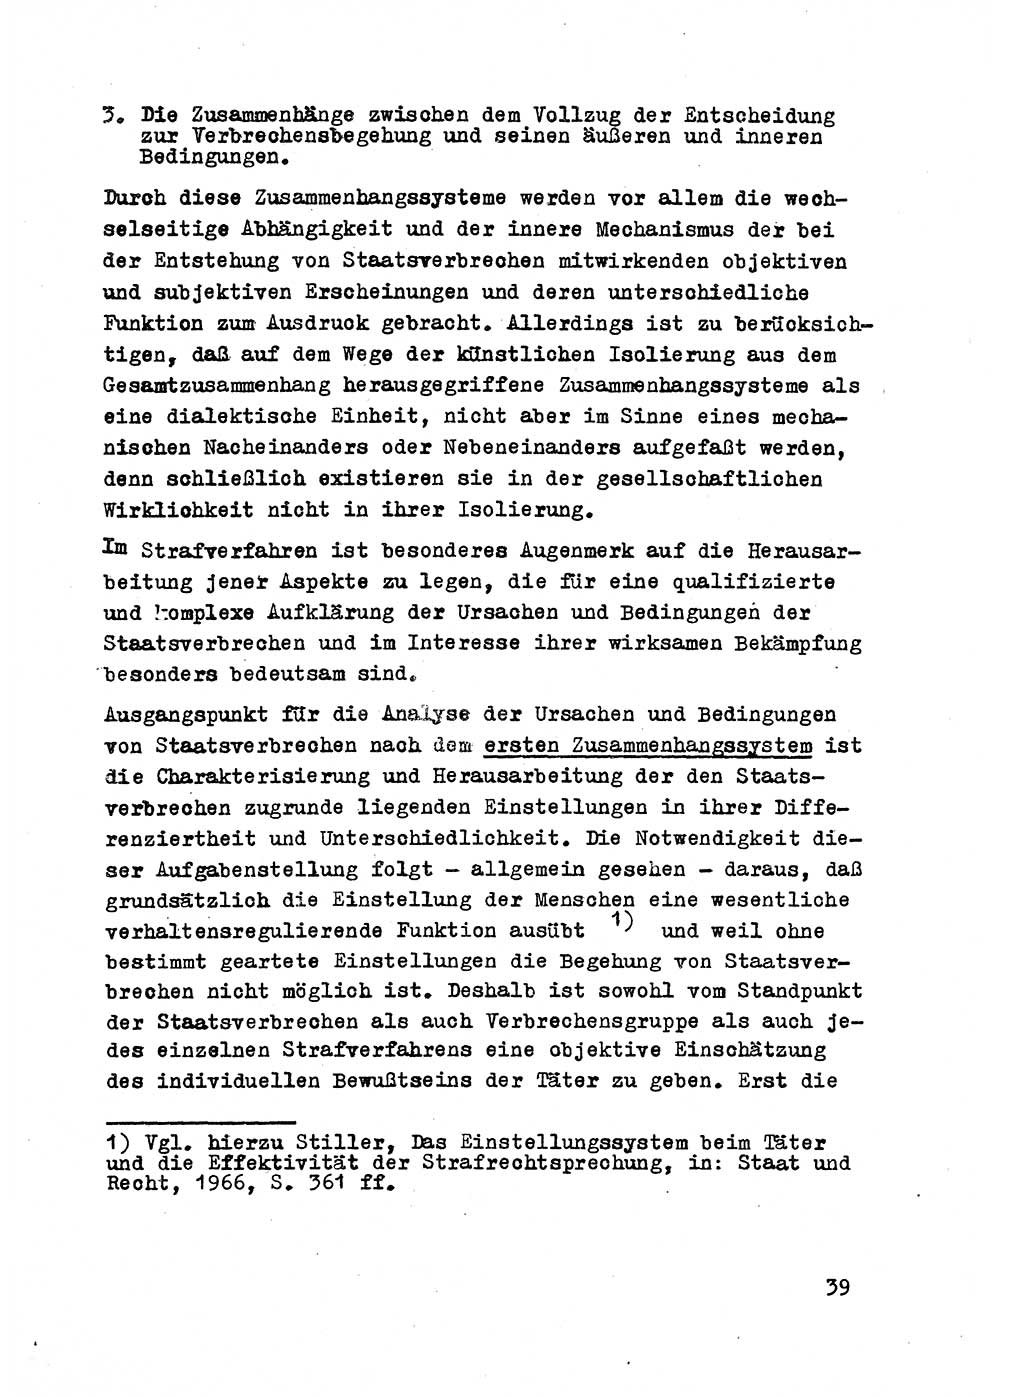 Strafrecht der DDR (Deutsche Demokratische Republik), Besonderer Teil, Lehrmaterial, Heft 2 1969, Seite 39 (Strafr. DDR BT Lehrmat. H. 2 1969, S. 39)